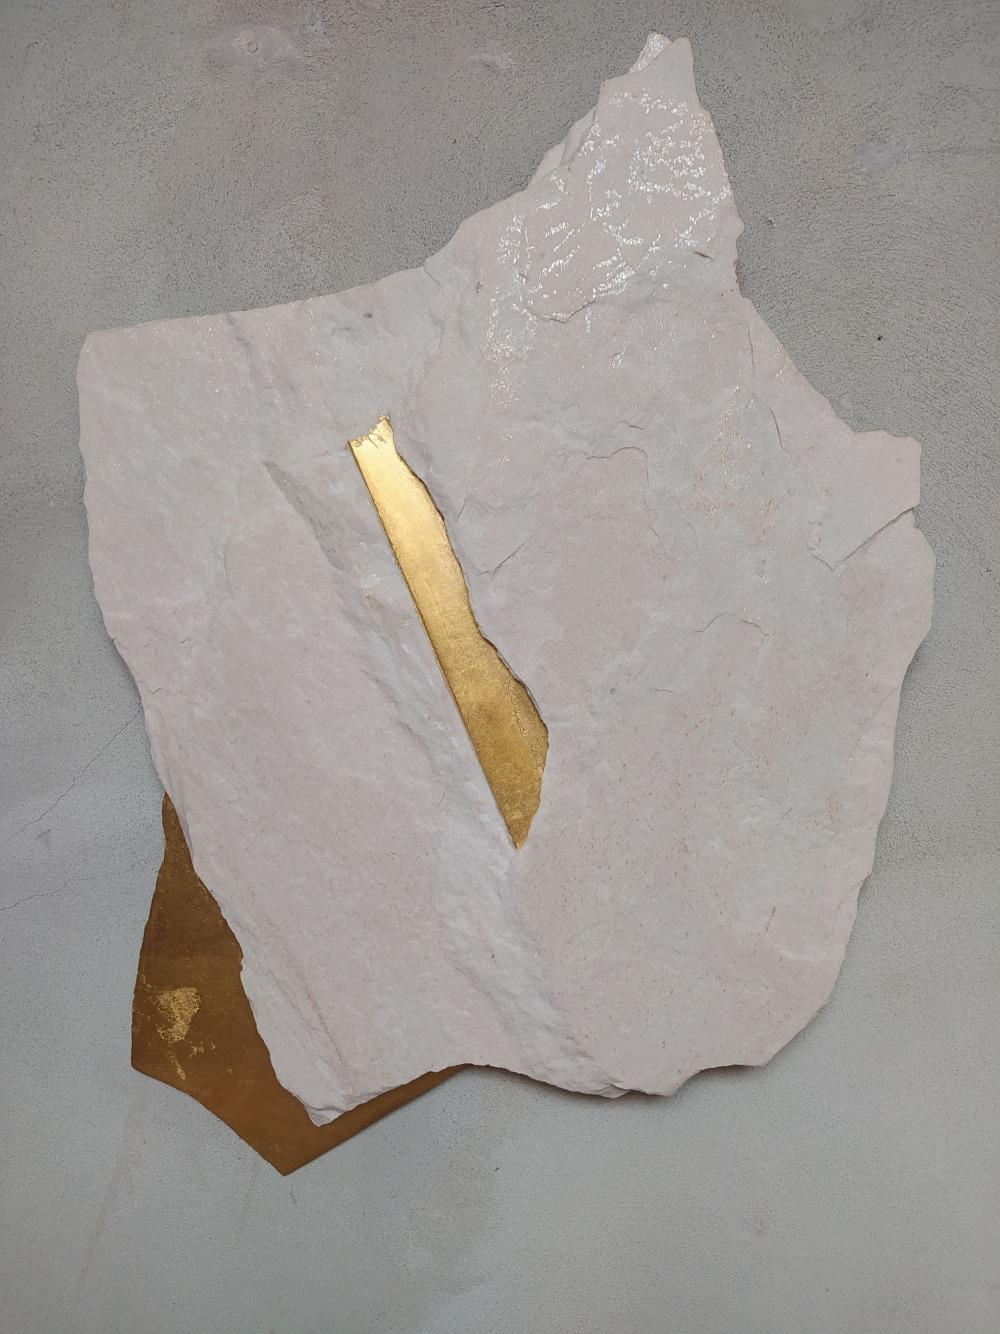 Sezione Aurea A7 è una scultura unica dell'artista contemporaneo Mattia Bosco. Questa scultura è realizzata in marmo Palissandro e foglia d'oro; le dimensioni sono 72 × 53,5 × 4 cm (28,3 × 21,1 × 1,6"). 

Il processo utilizzato dall'artista è